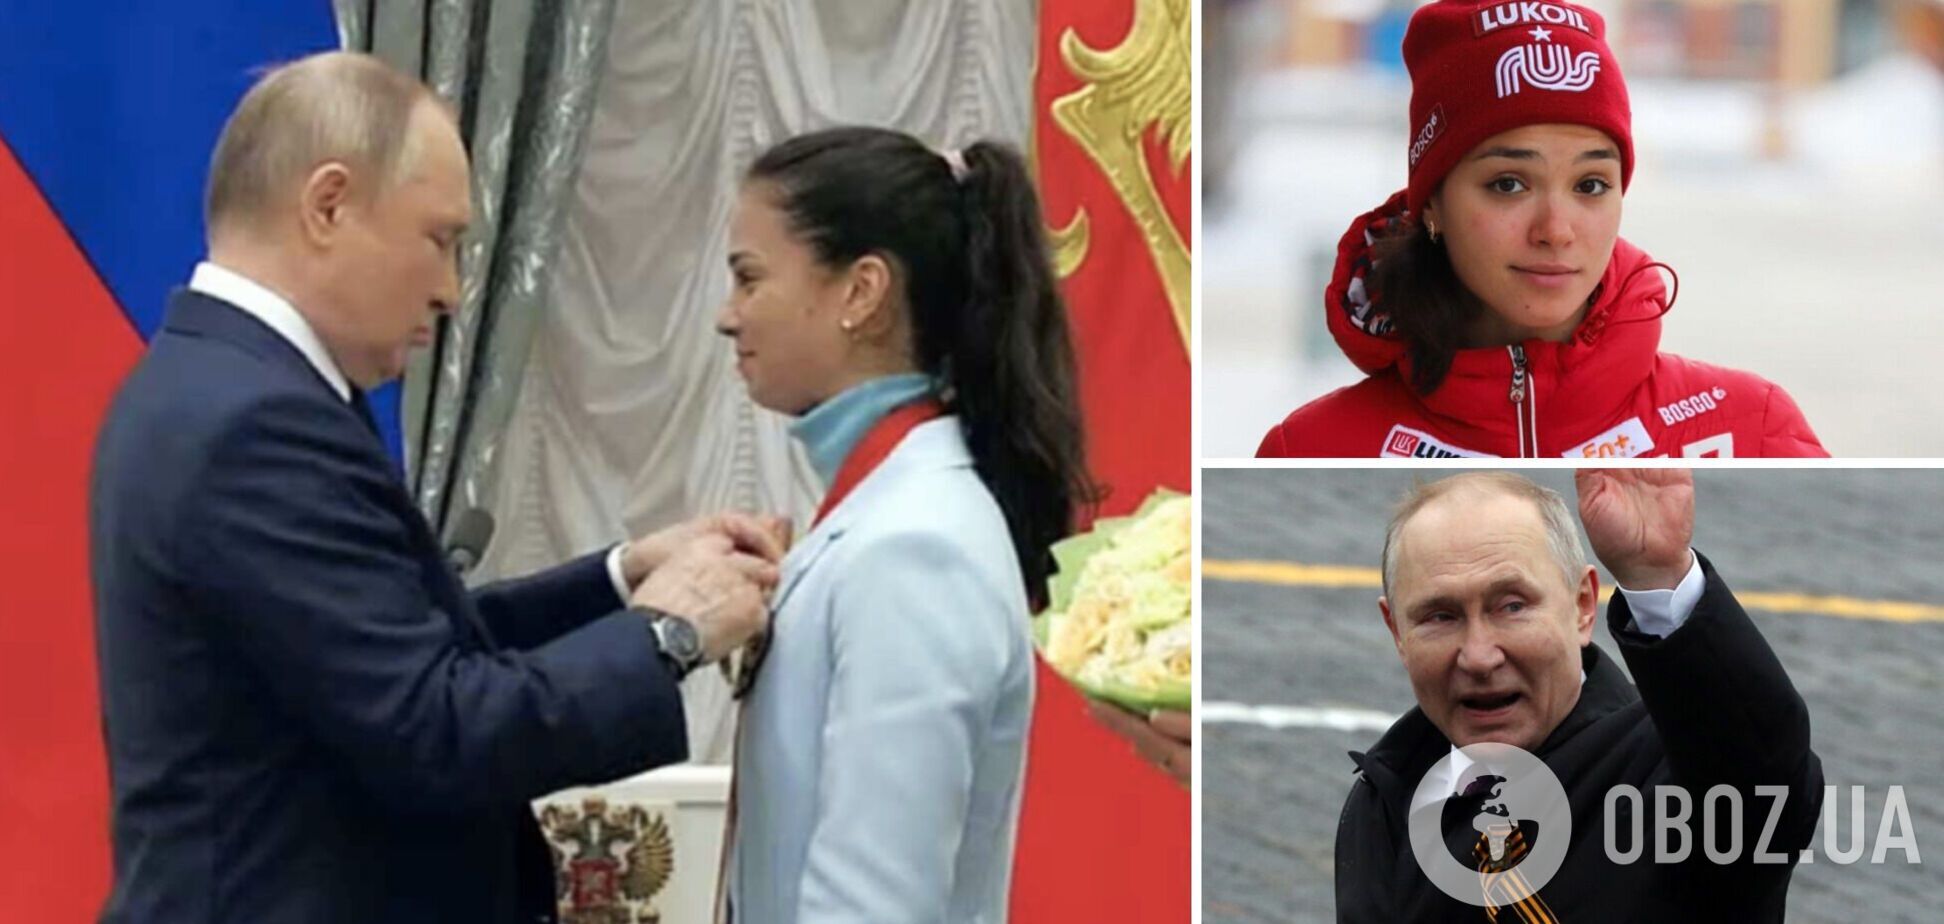 Олімпійська чемпіонка з Росії захопилася 'Путіним, якого обрав народ' і стала посміховиськом